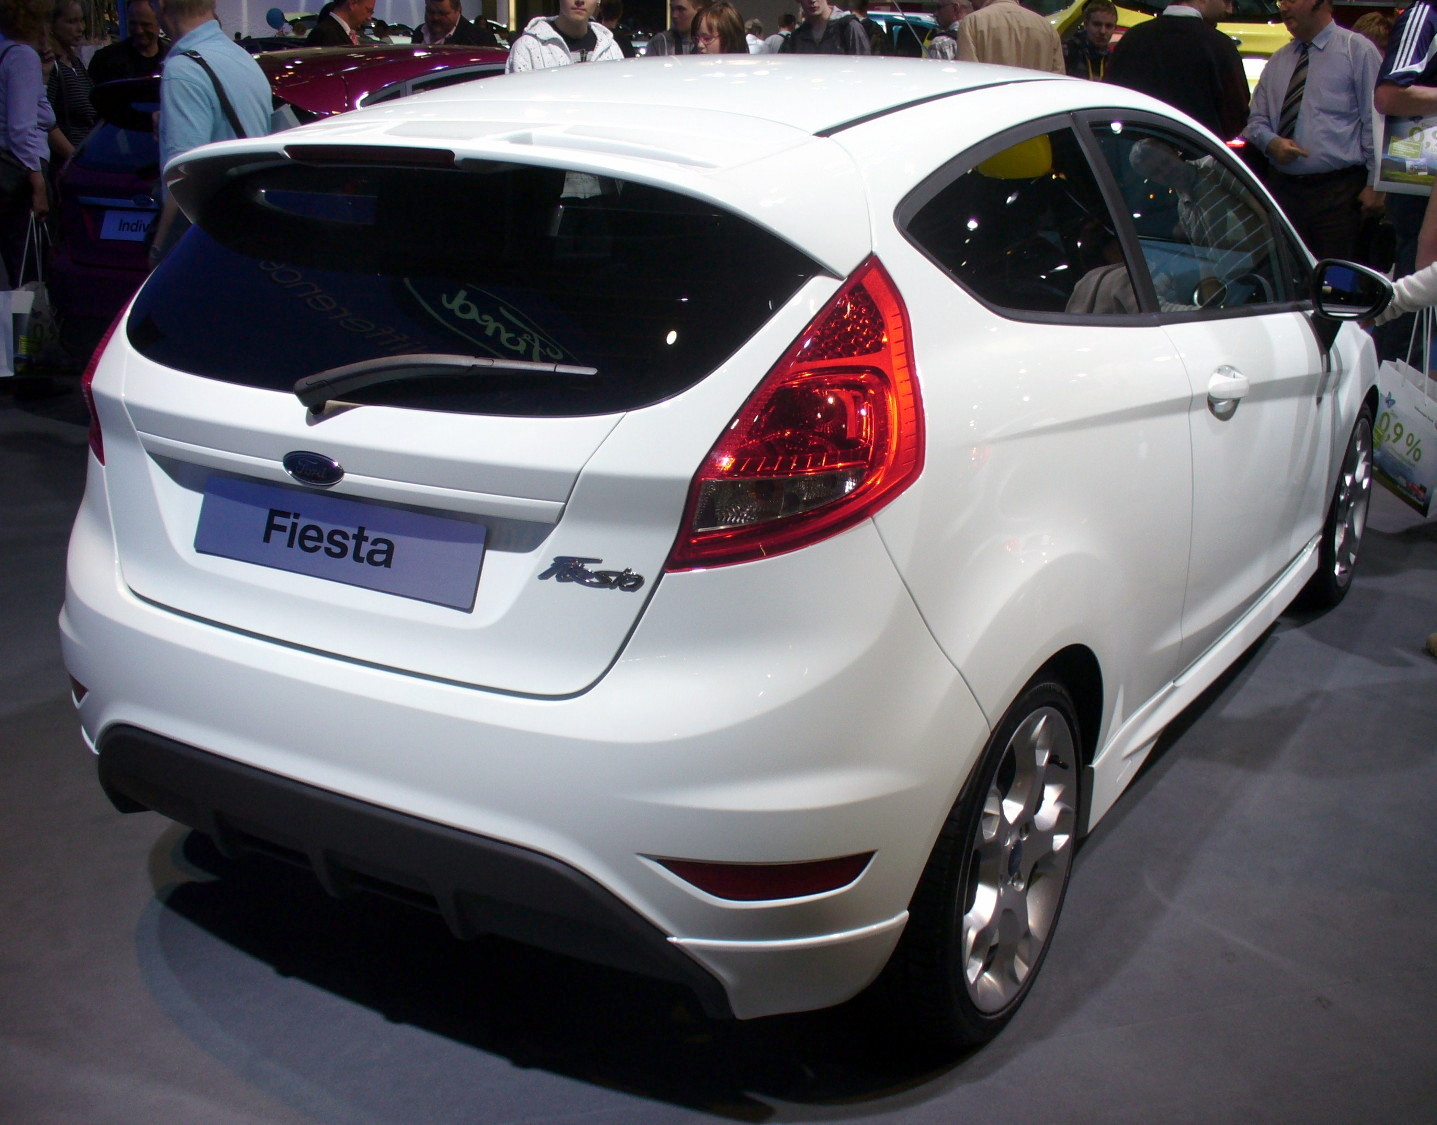 File:2010 Ford Fiesta 1.2 - rear.jpg - Wikimedia Commons